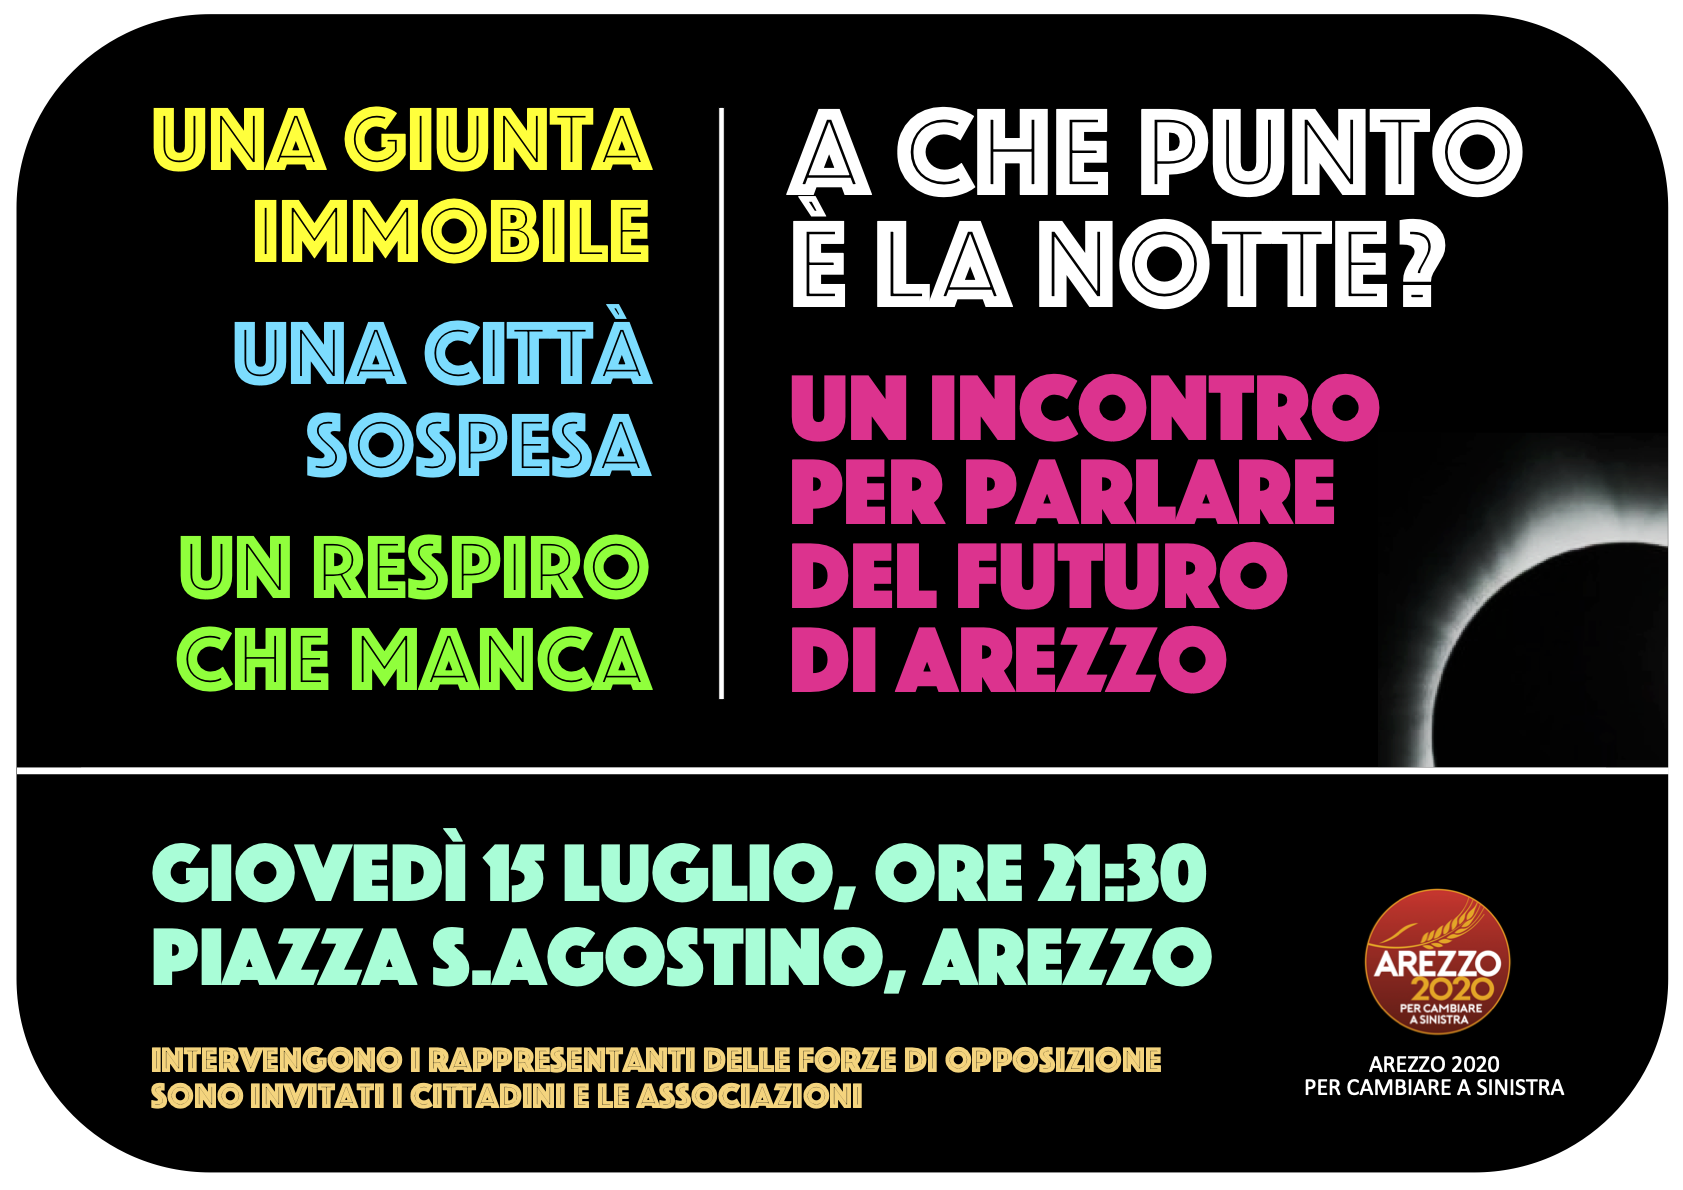 “A che punto è la notte calata su Arezzo?” Incontro pubblico di Arezzo 2020 per parlare del futuro della città